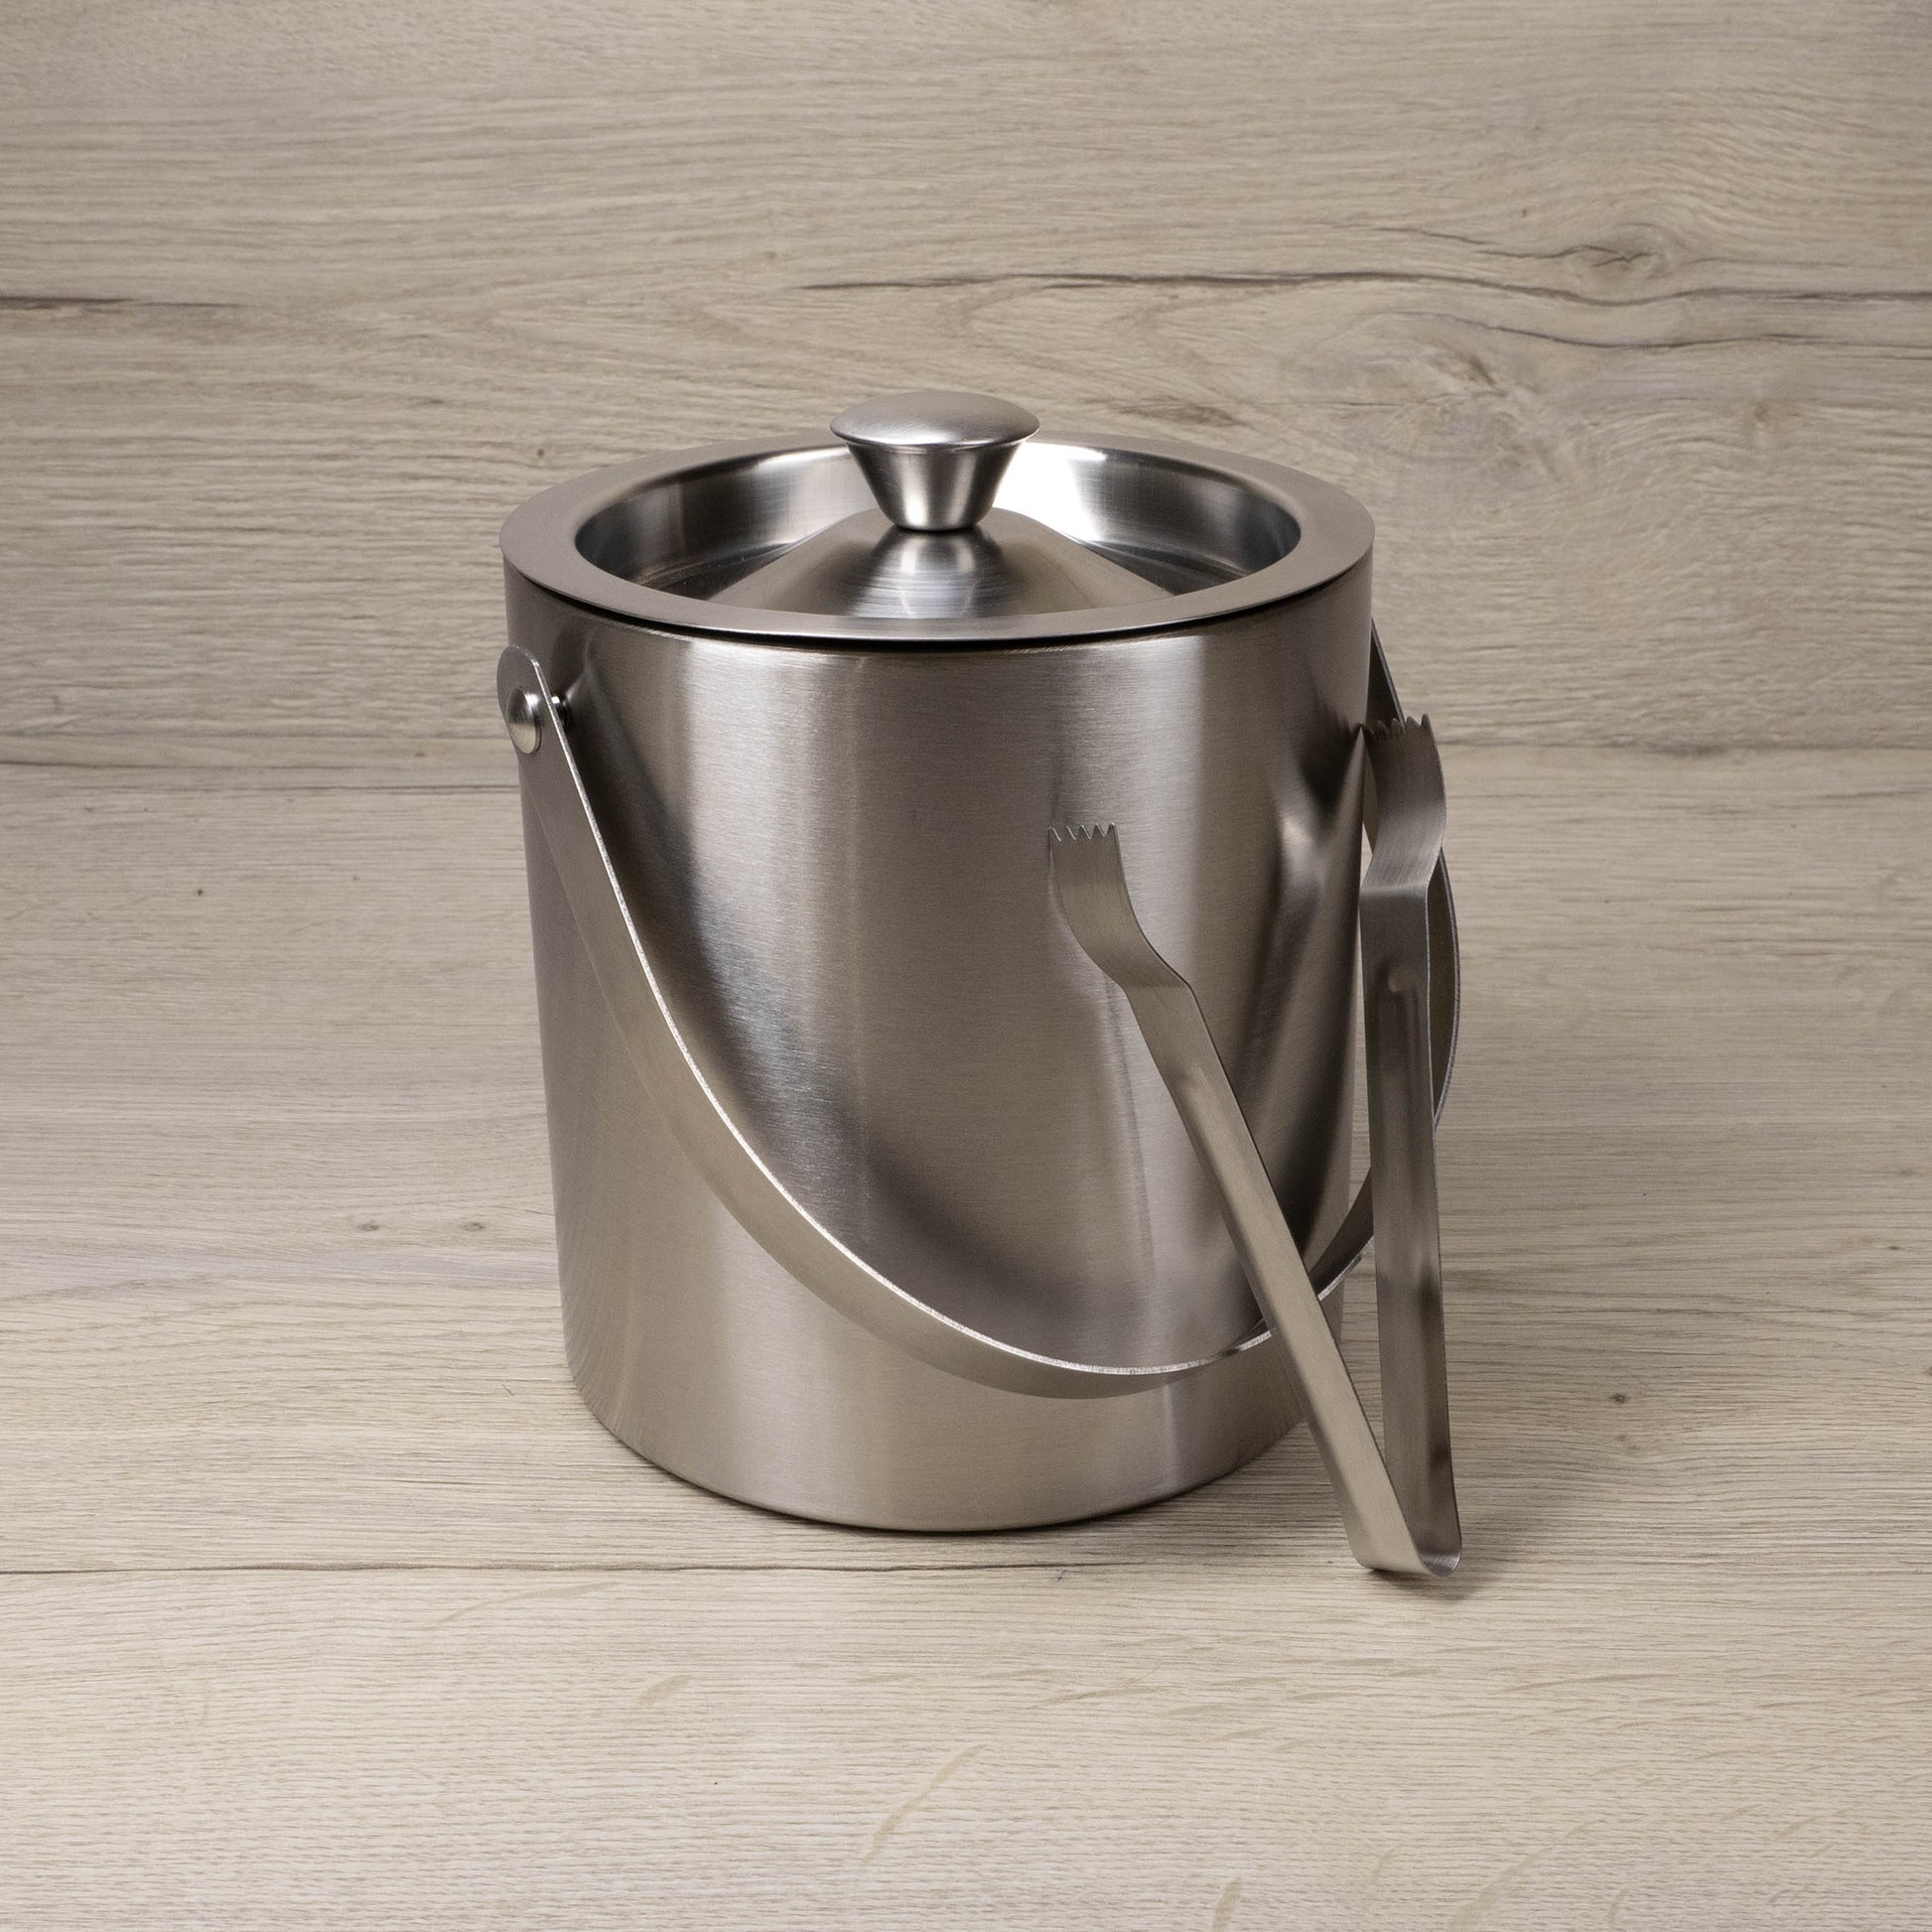 Eiseimer - Silber - Thermobehälter - Excellent Houseware